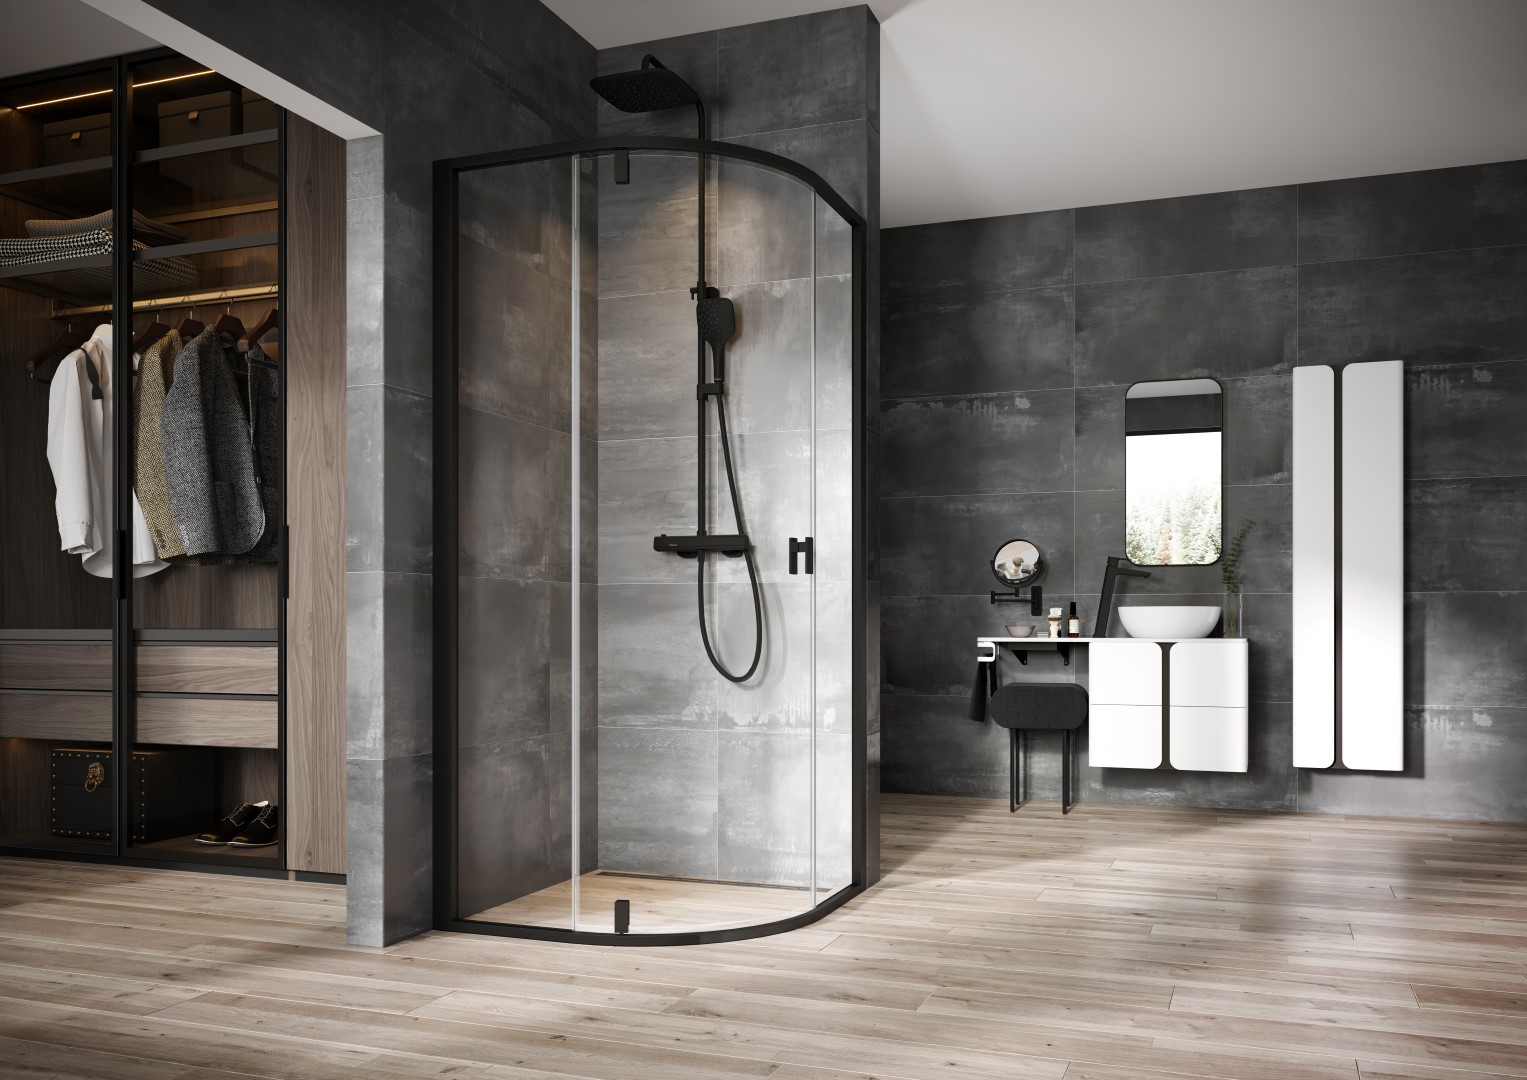 Tökéletes vonalvezetés jellemzi a fürdőszobák új kedvencét a RAVAK Nexty zuhanykabinját. 